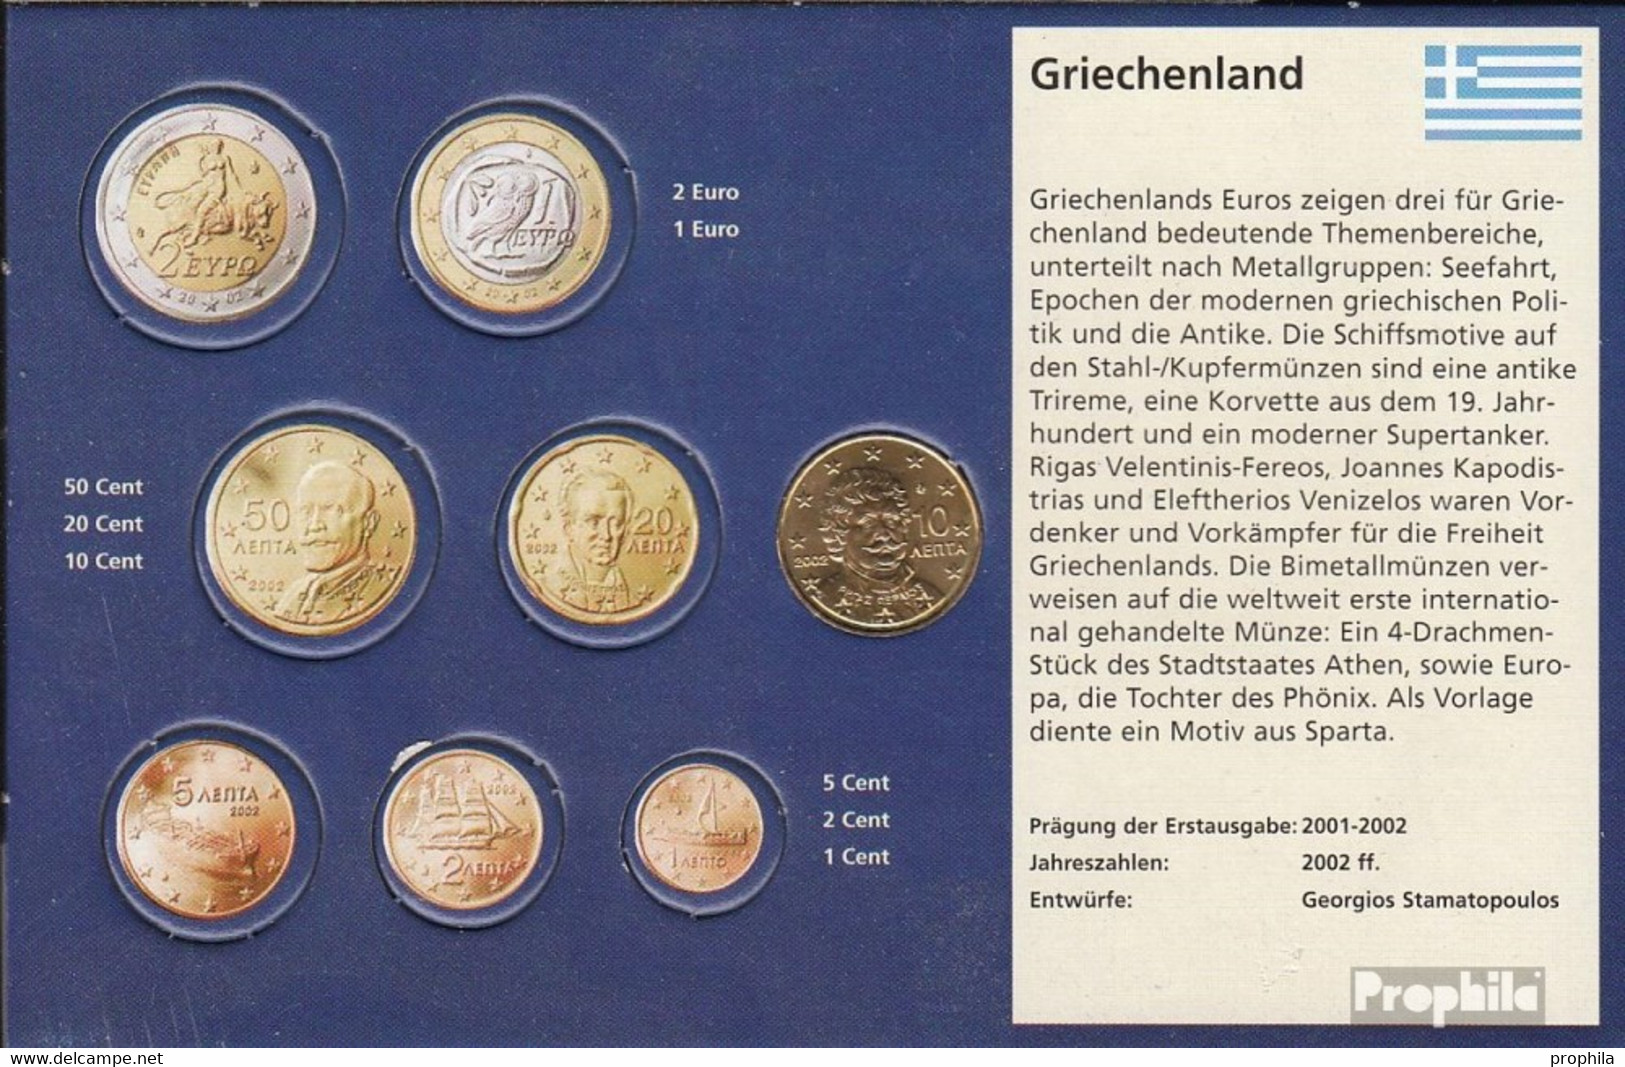 Griechenland GR 4 2002 G Stgl./unzirkuliert Mit Geheimzeichen Stgl./unzirkuliert 2002 Kursmünze 10 Cent - Griechenland